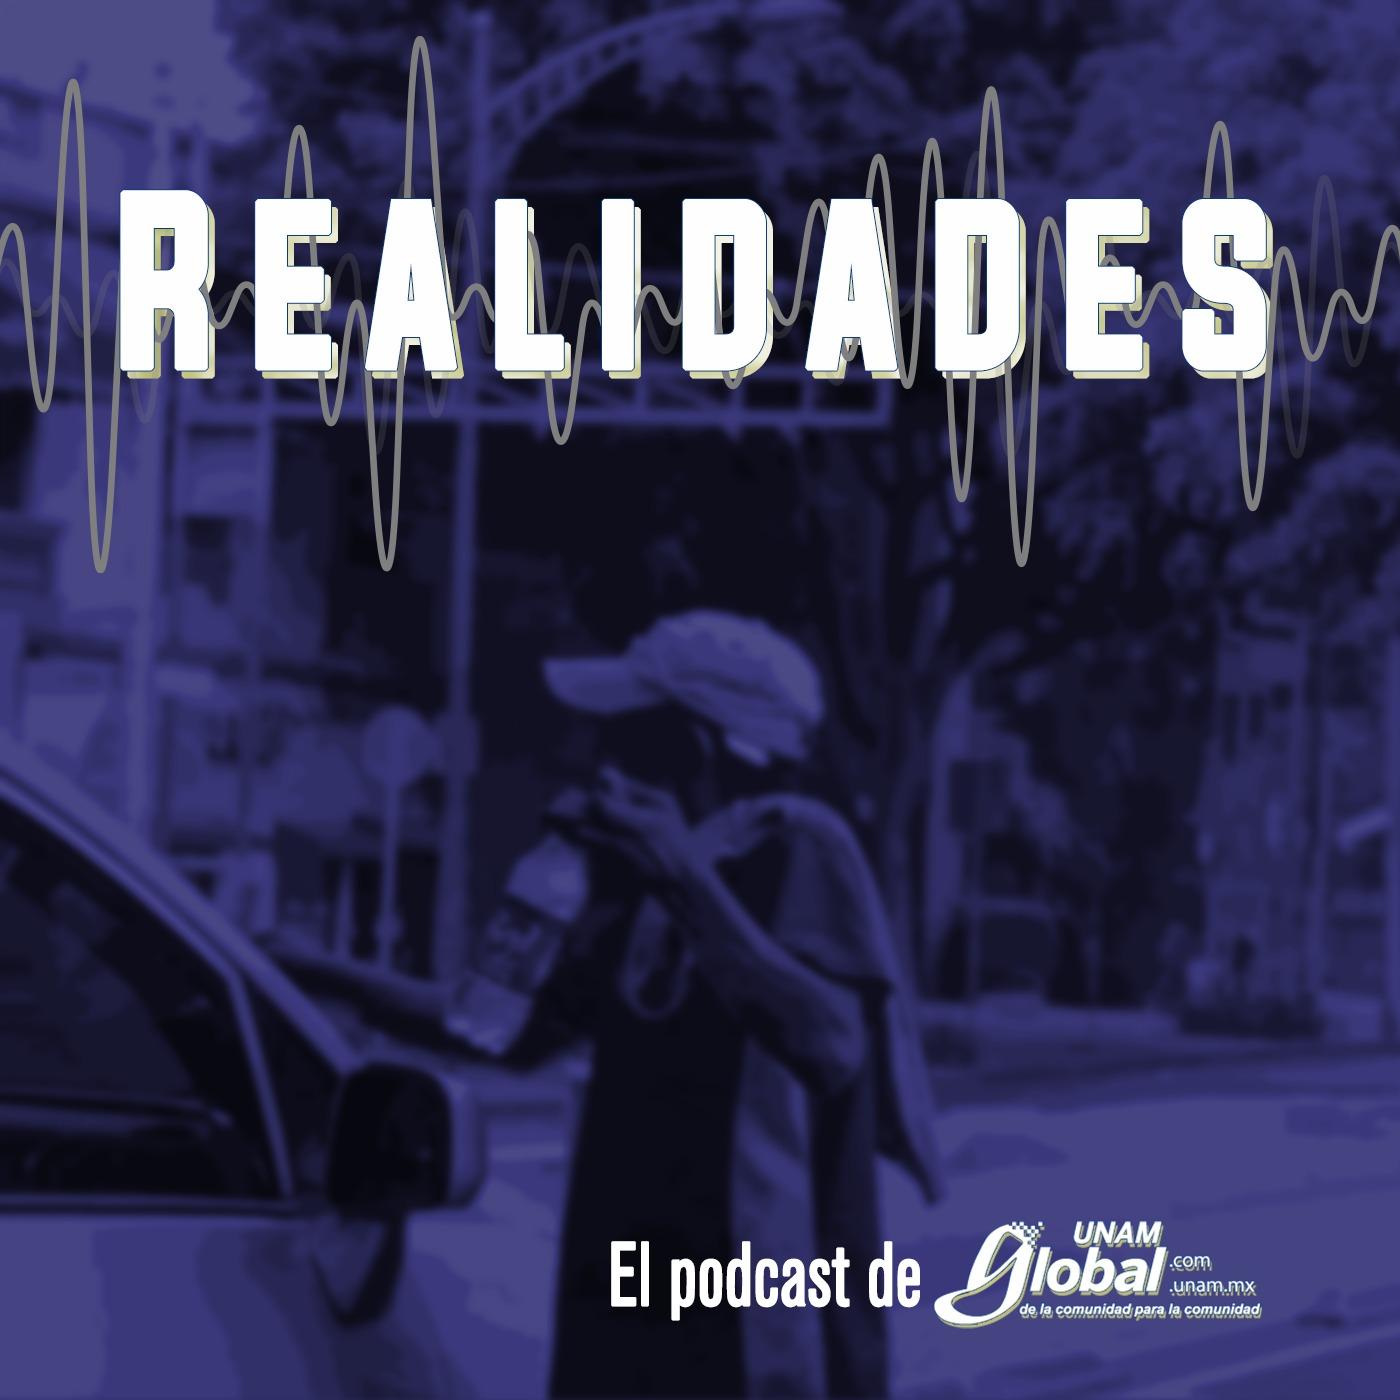 REALIDADES, el podcast de UNAM Global